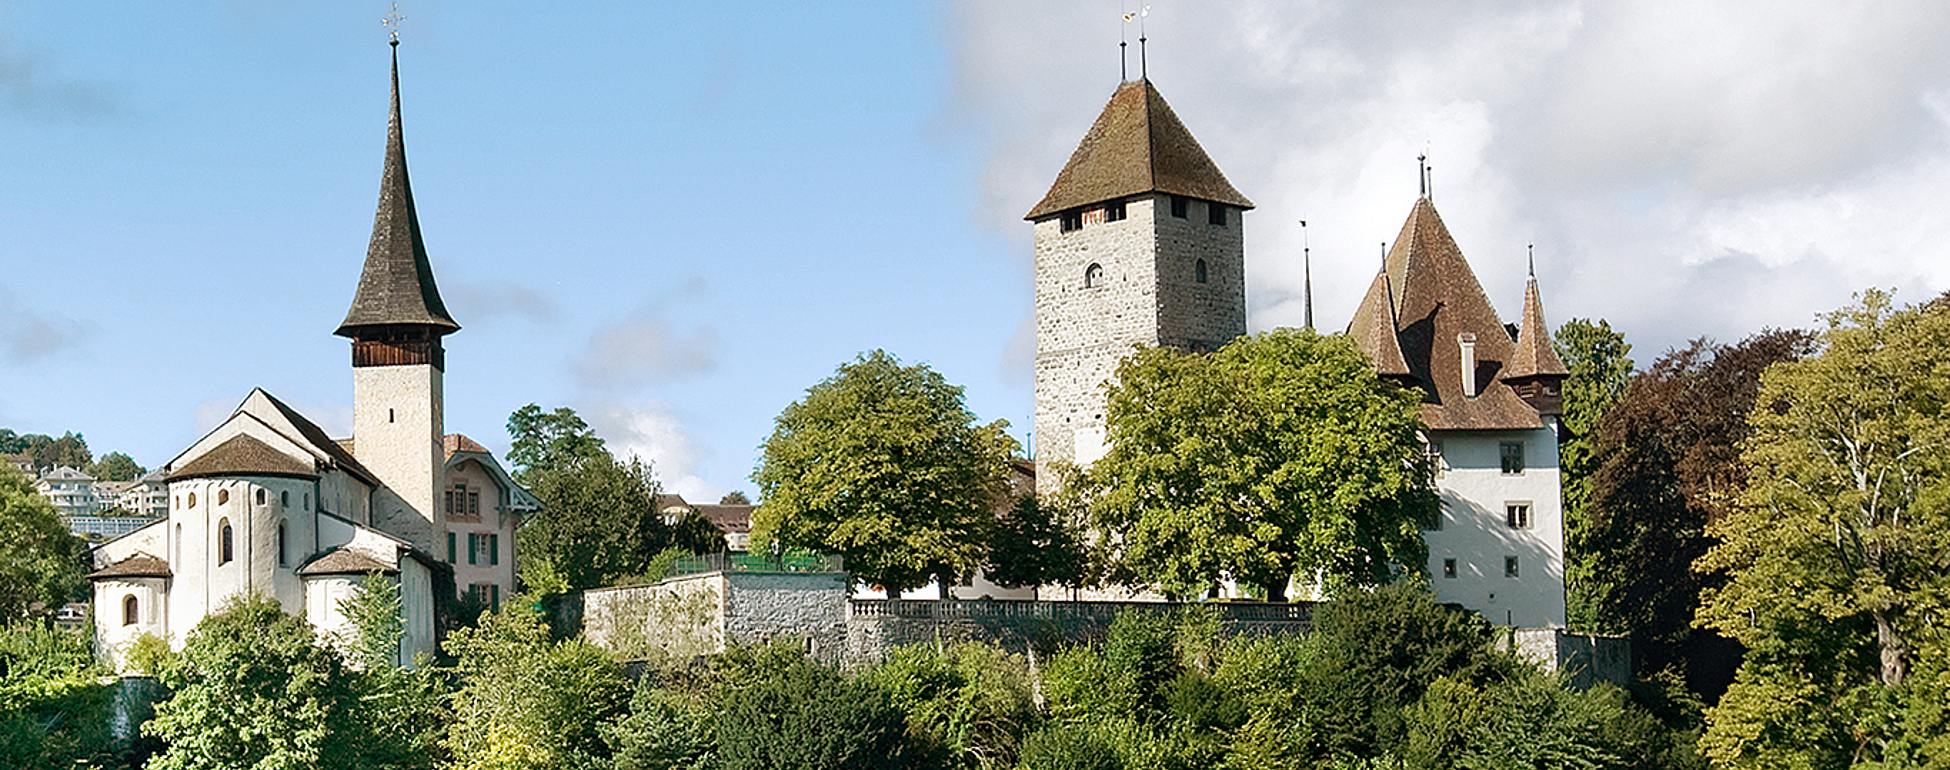 Château de Spiez